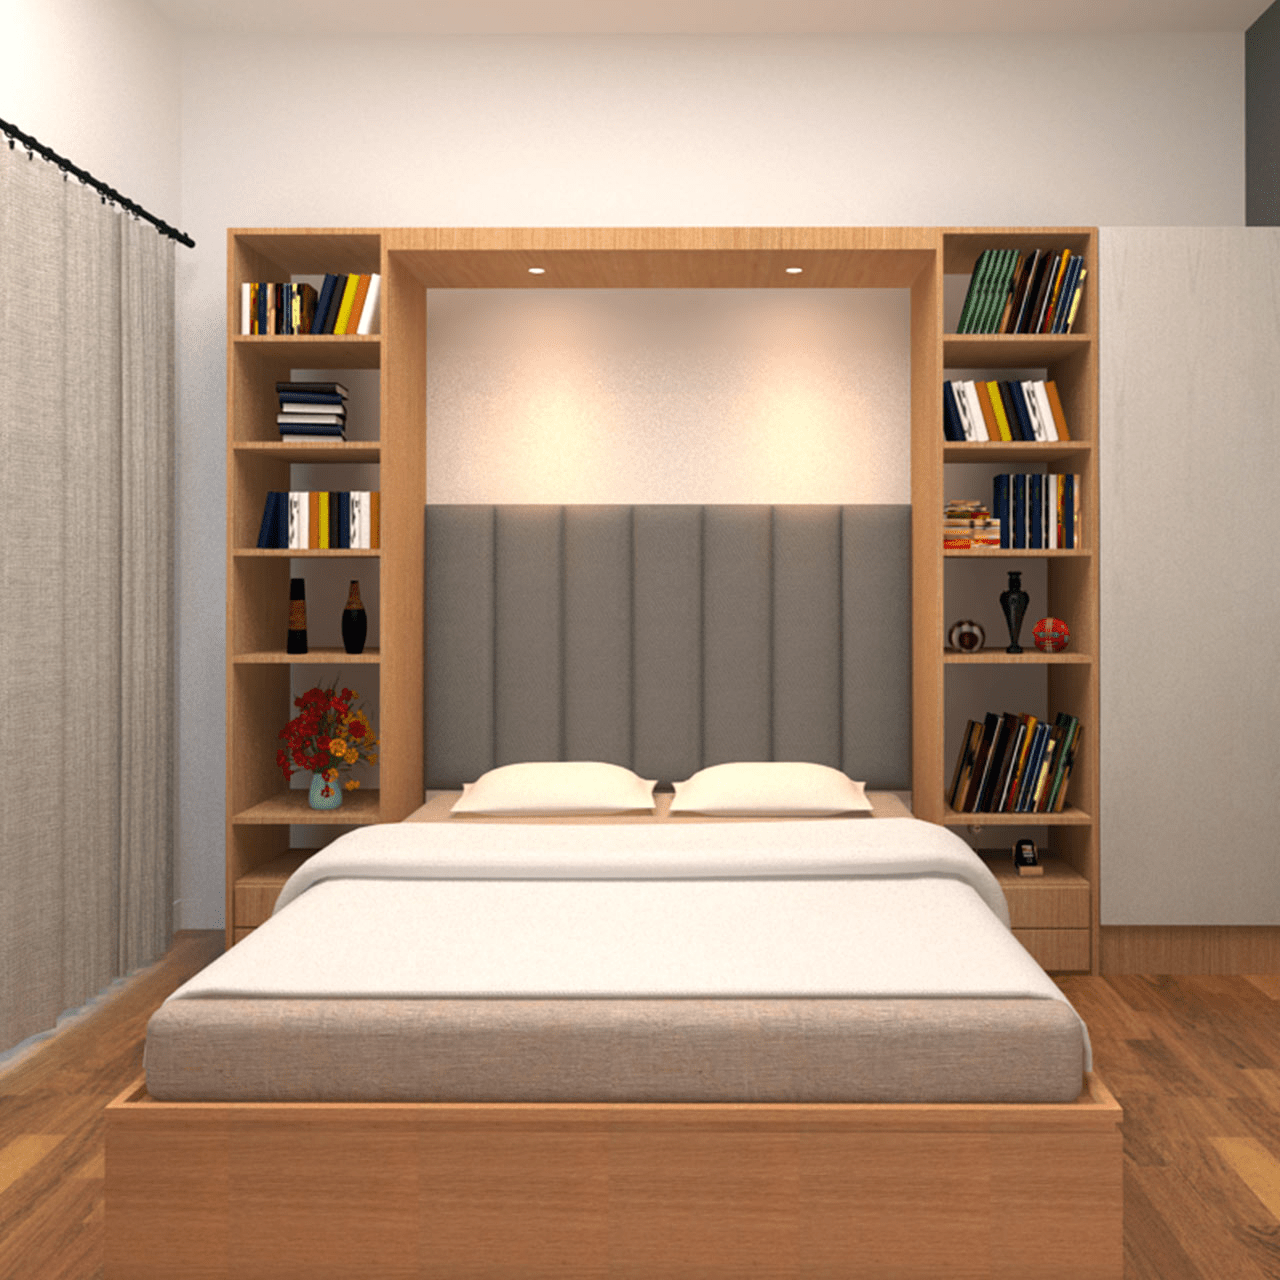 7 ý tưởng thiết kế phòng ngủ độc đáo từ việc decor đầu giường